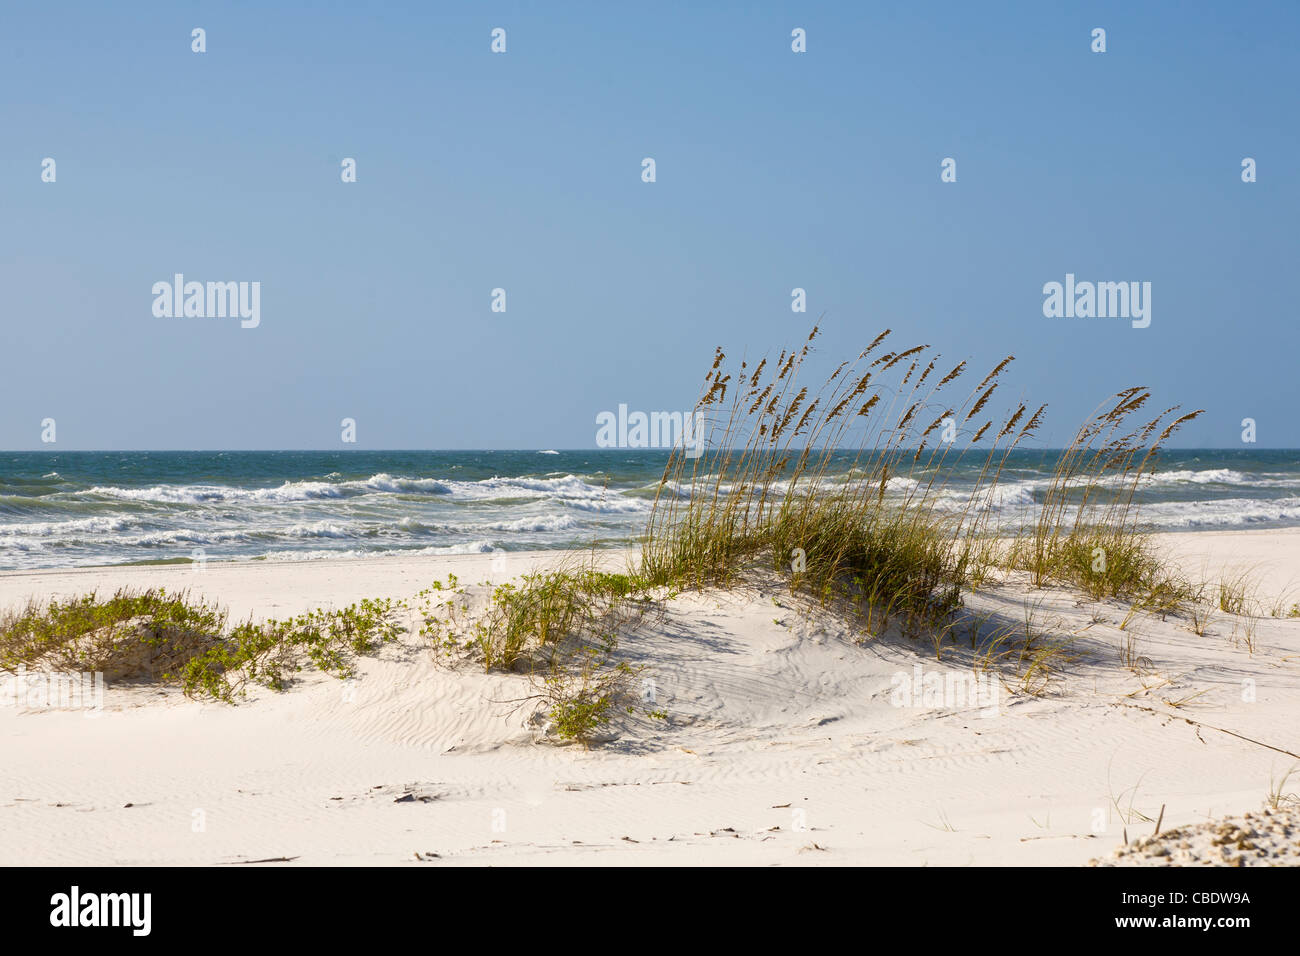 Dunes de sable dans la zone Perdido Key de Gulf Islands National Seashore près de Pensacola en Floride Banque D'Images